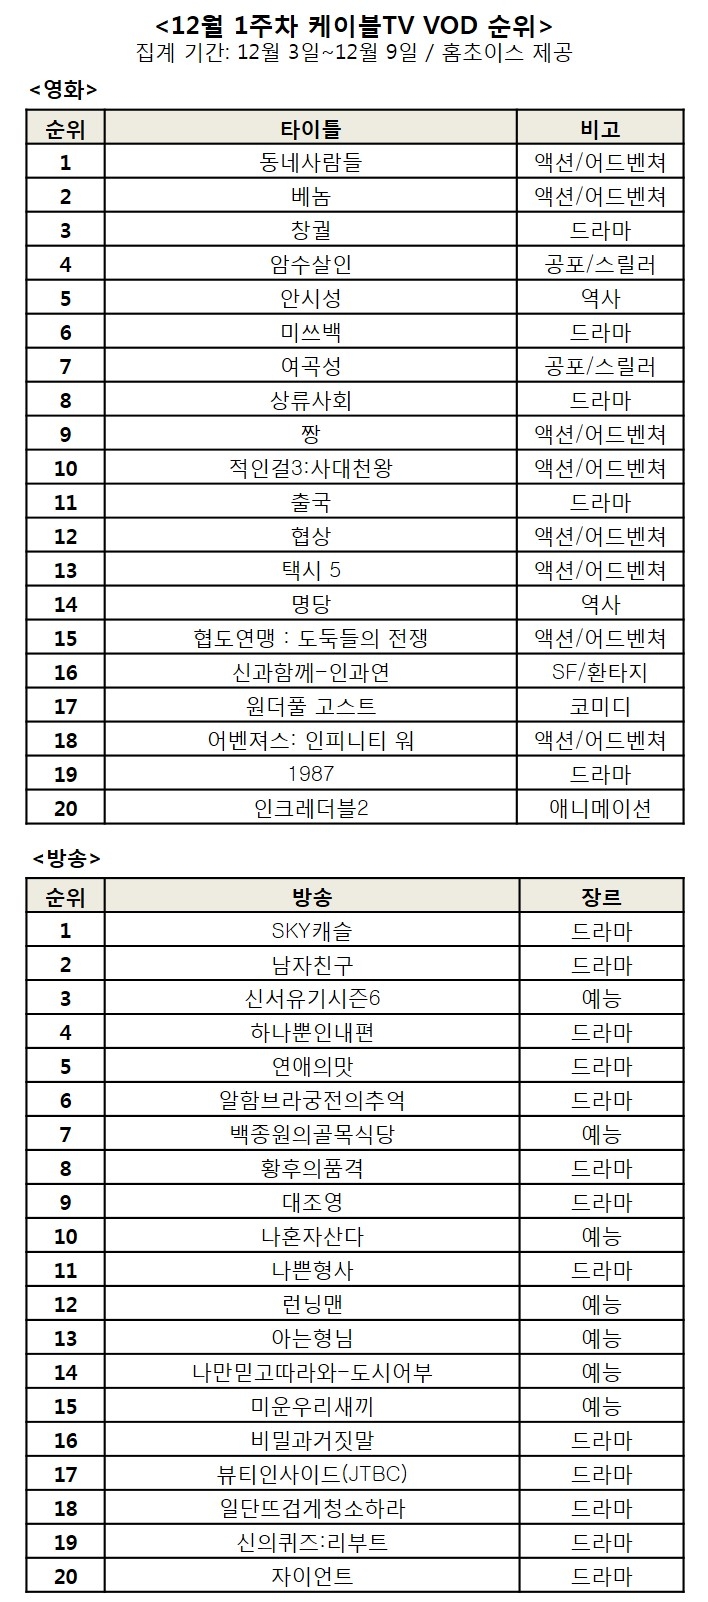 [주간VOD-12월1주] ‘동네사람들’ 2주 연속 1위 ‘베놈’ 2위로 상승…방송은 'SKY 캐슬' 1위 상승